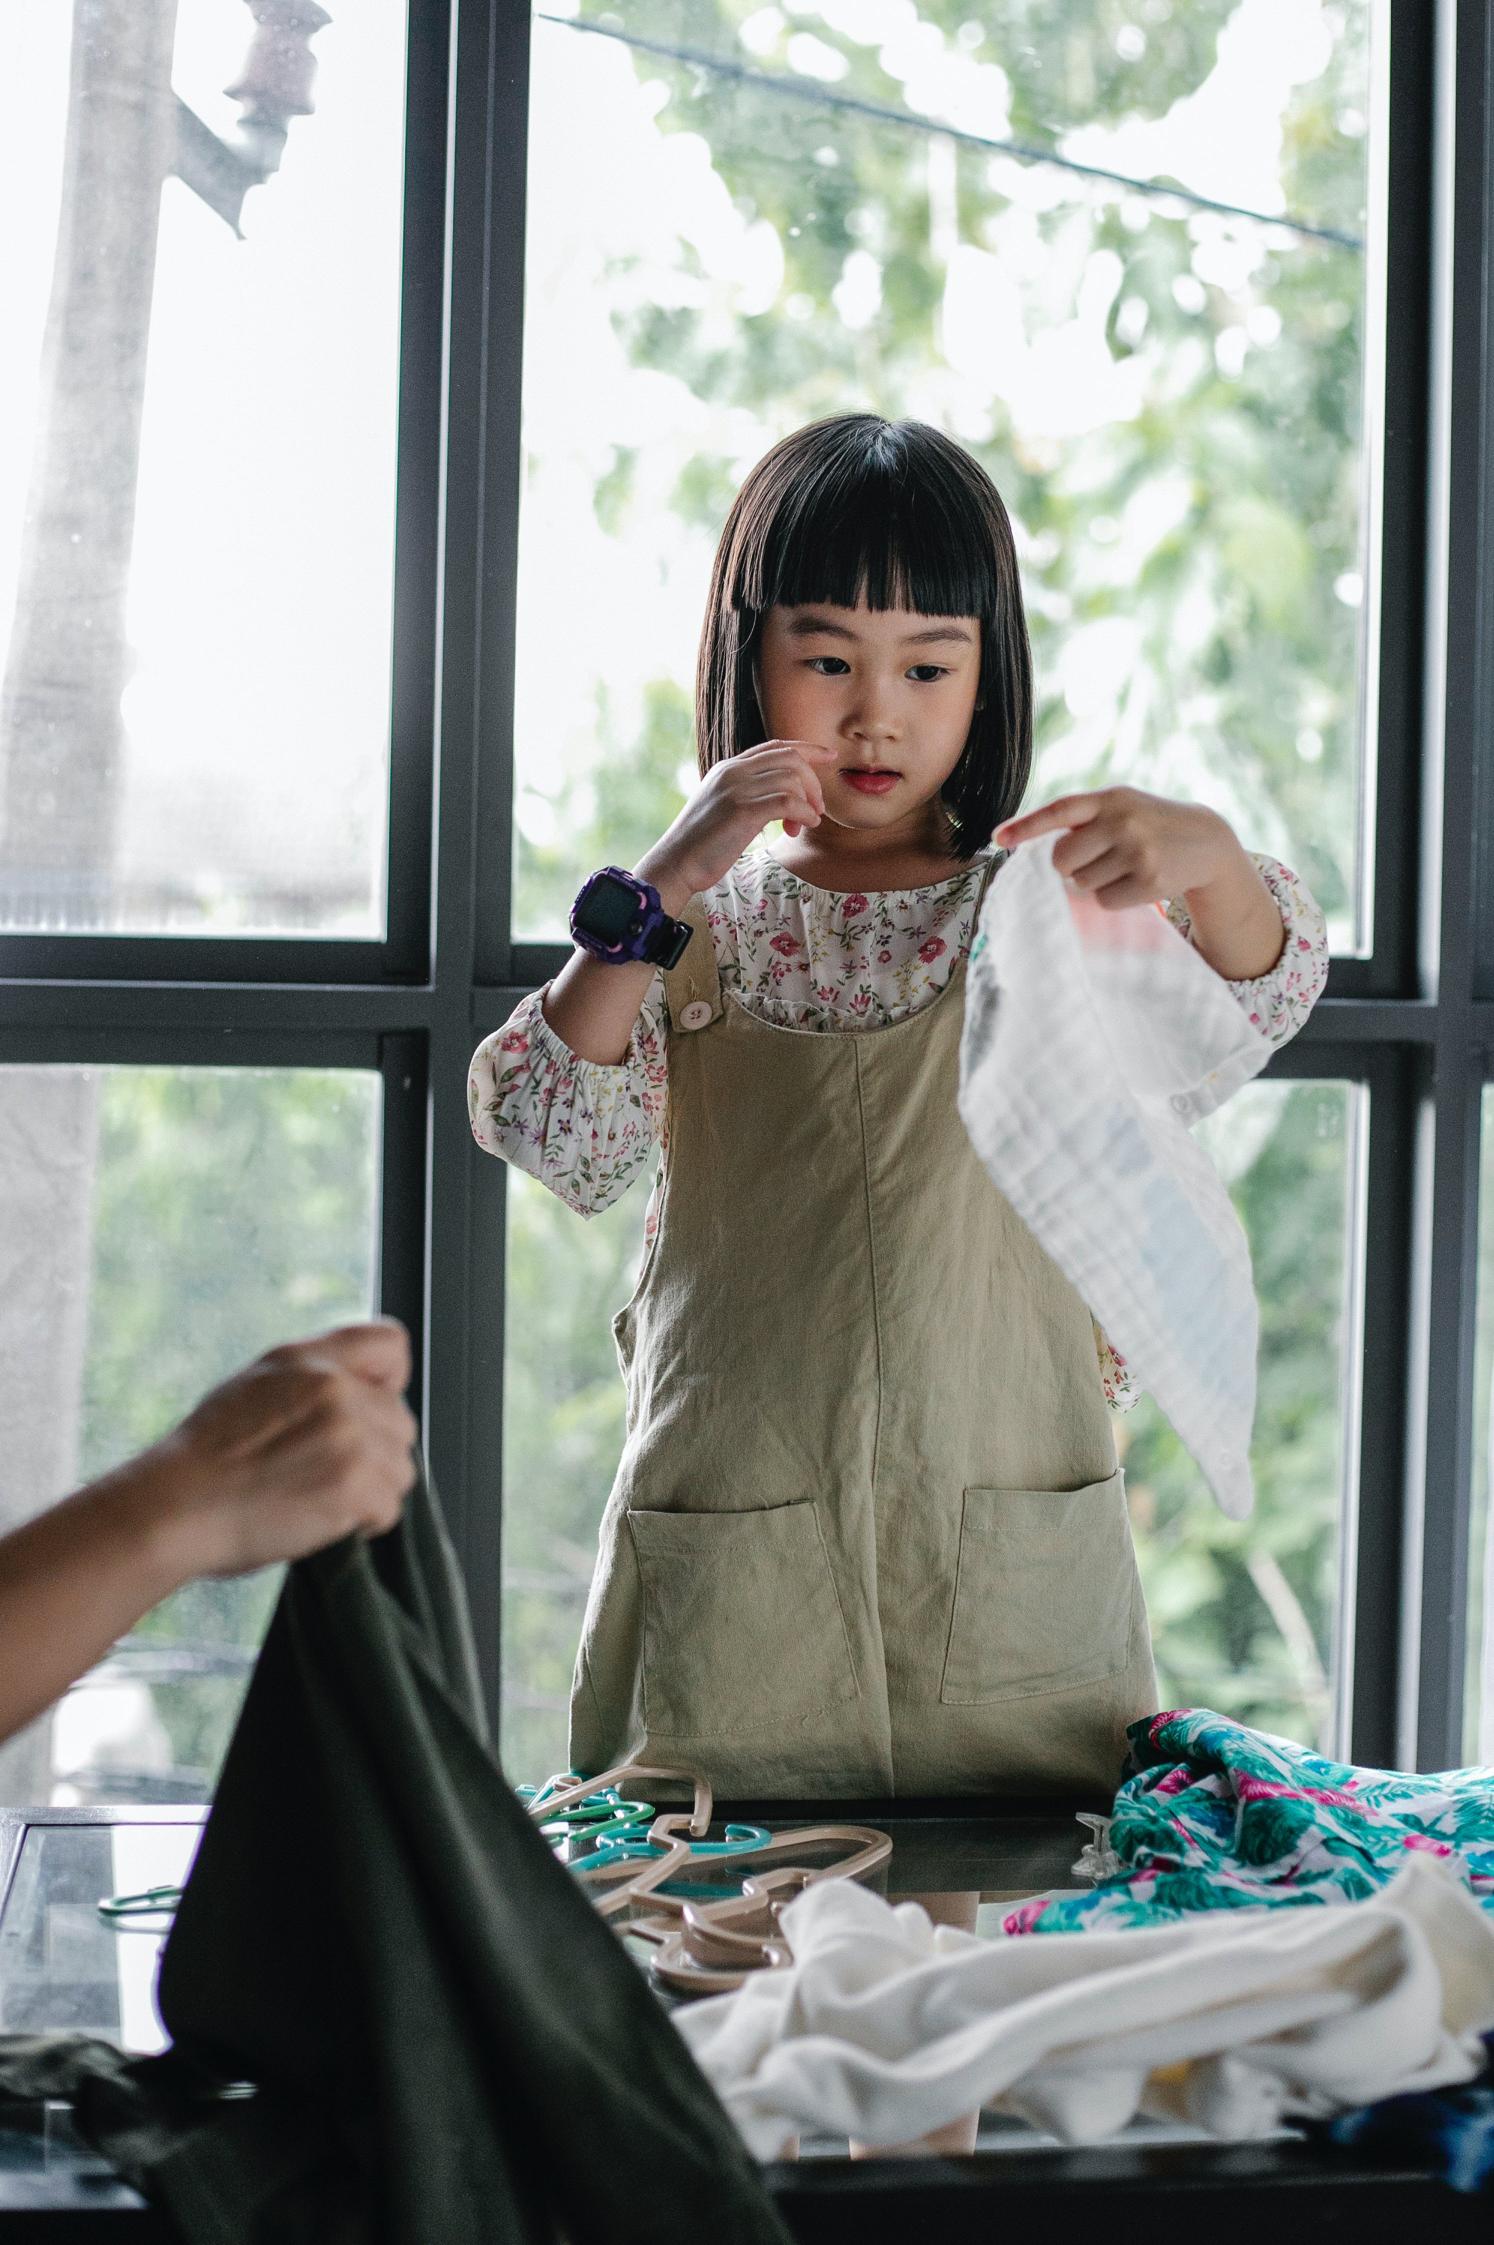 Przygotowanie dziecka do aktywności na świeżym powietrzu: jak wybrać odpowiednie ubrania